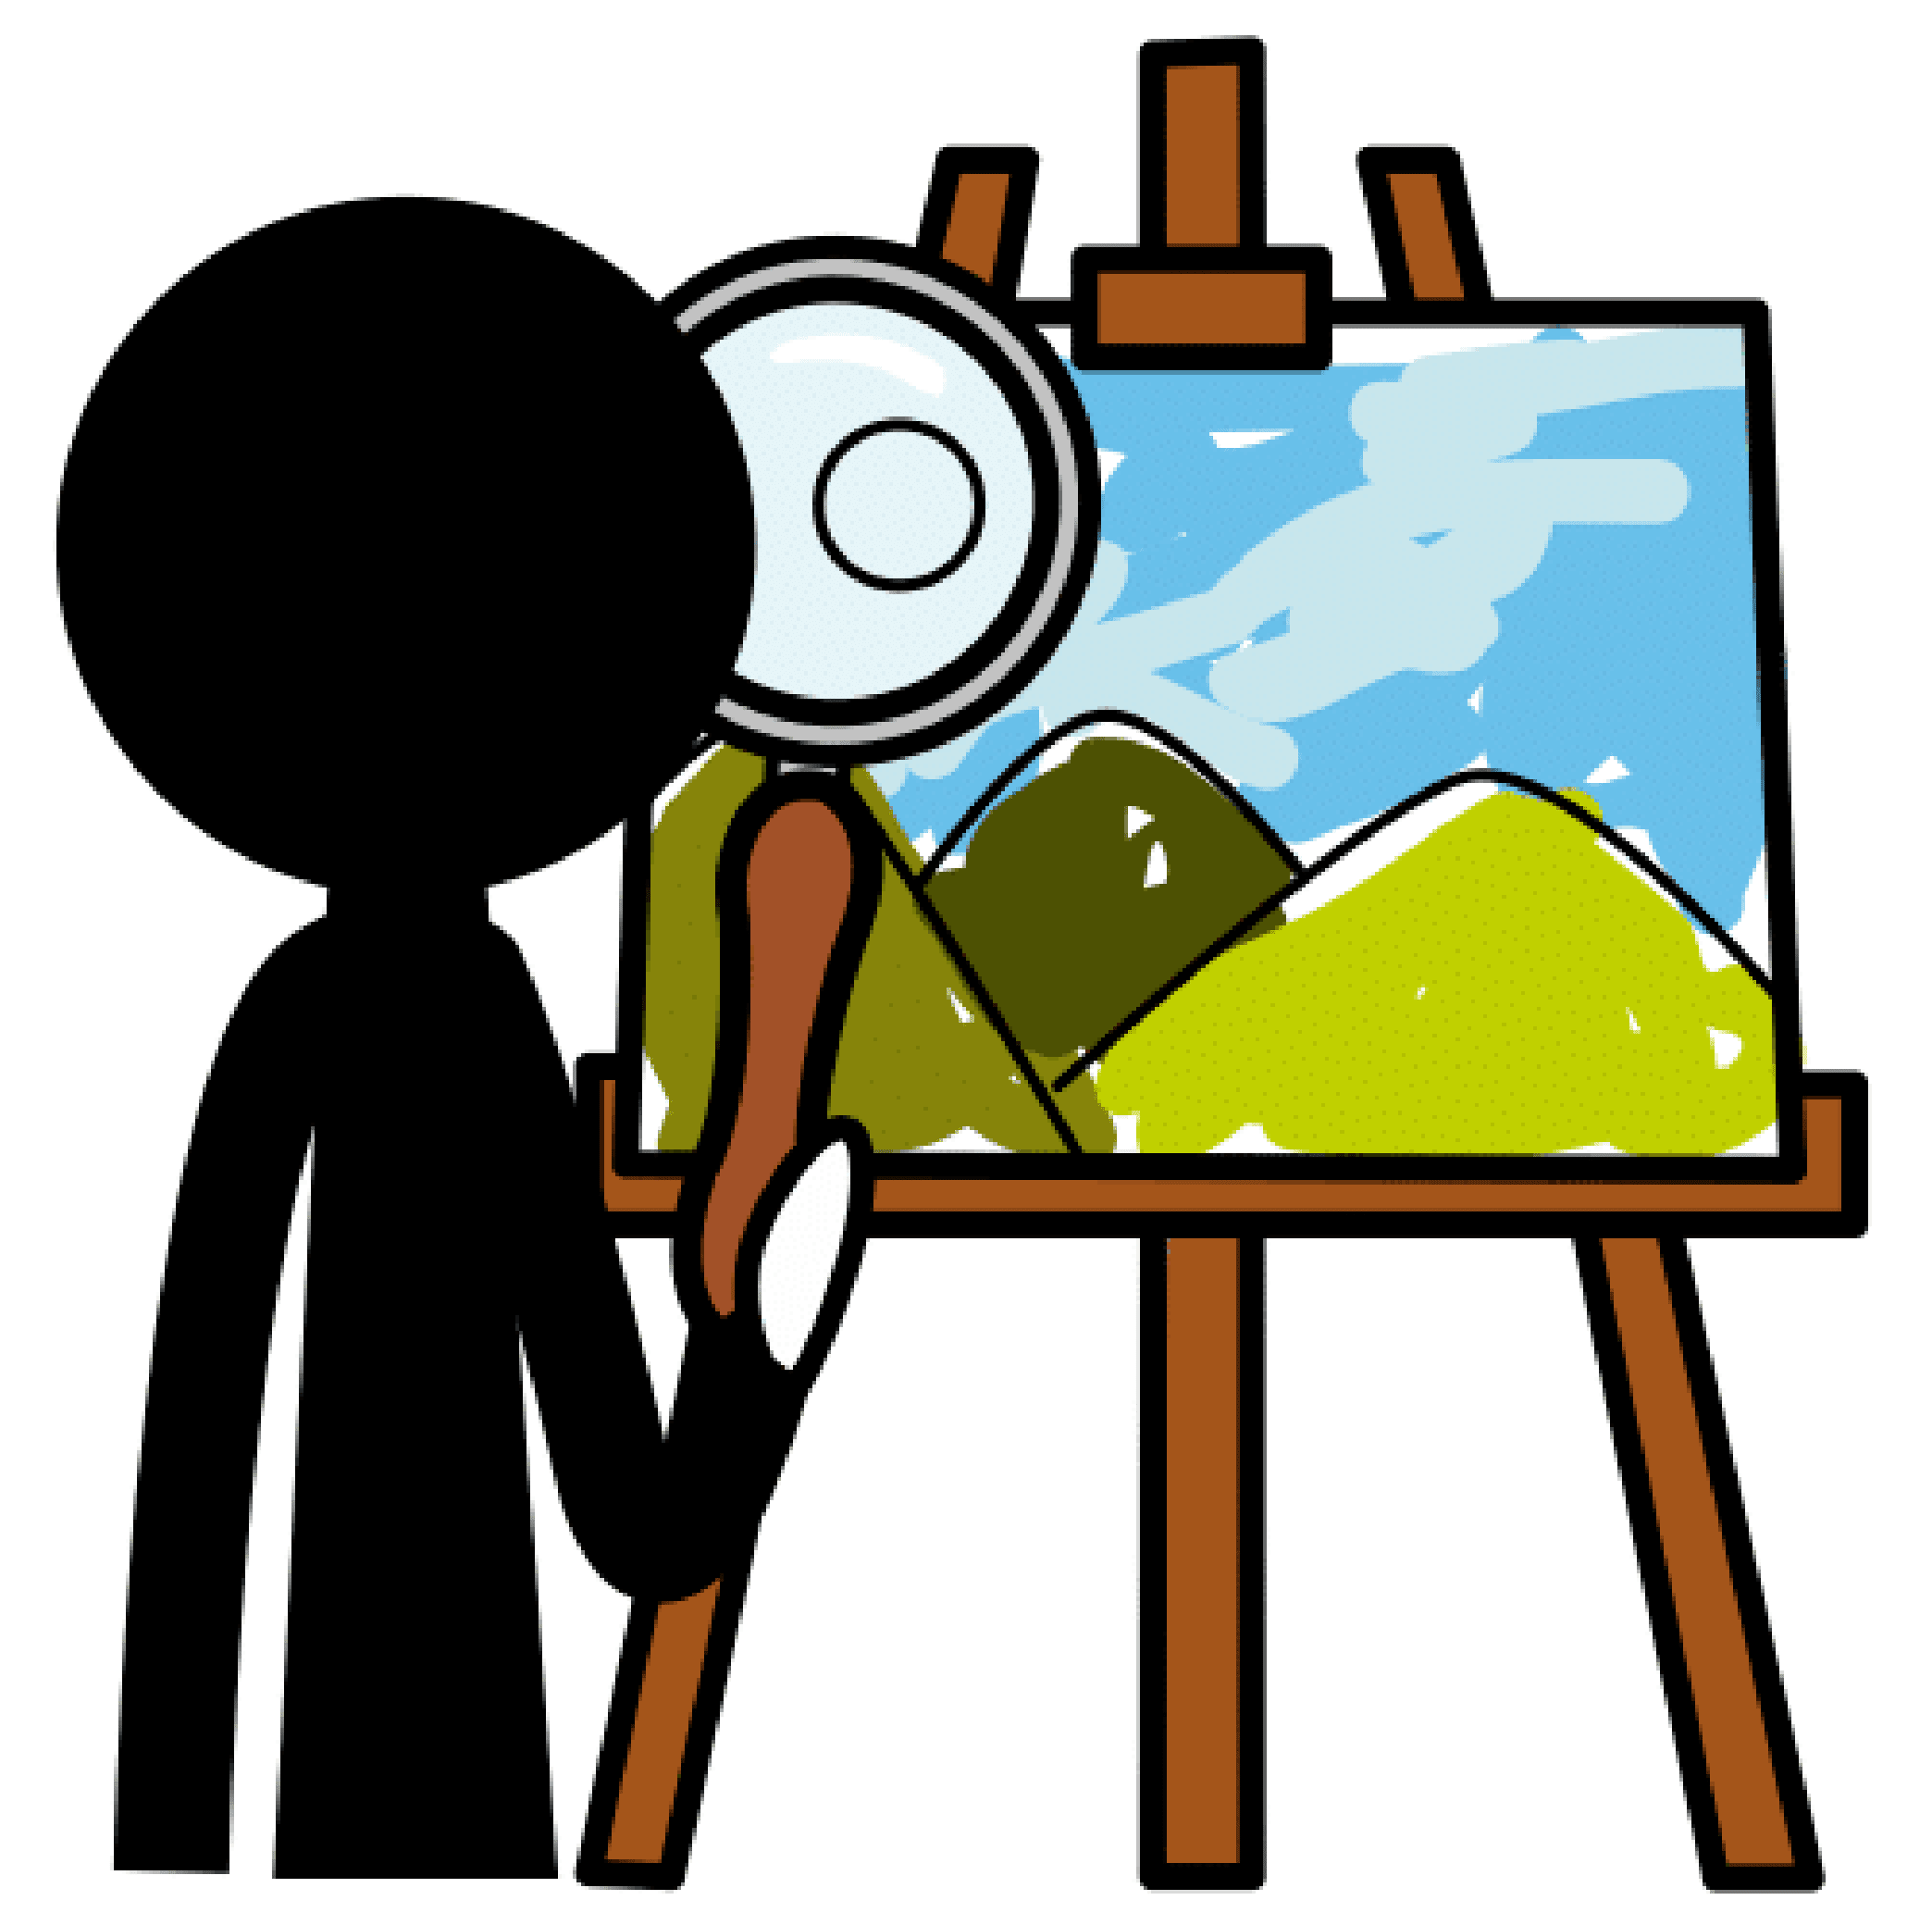 Persona de espaldas con lupa en la mano derecha analiza un cuadro en un caballete, en el que hay dibujado un cielo azul con montañas.